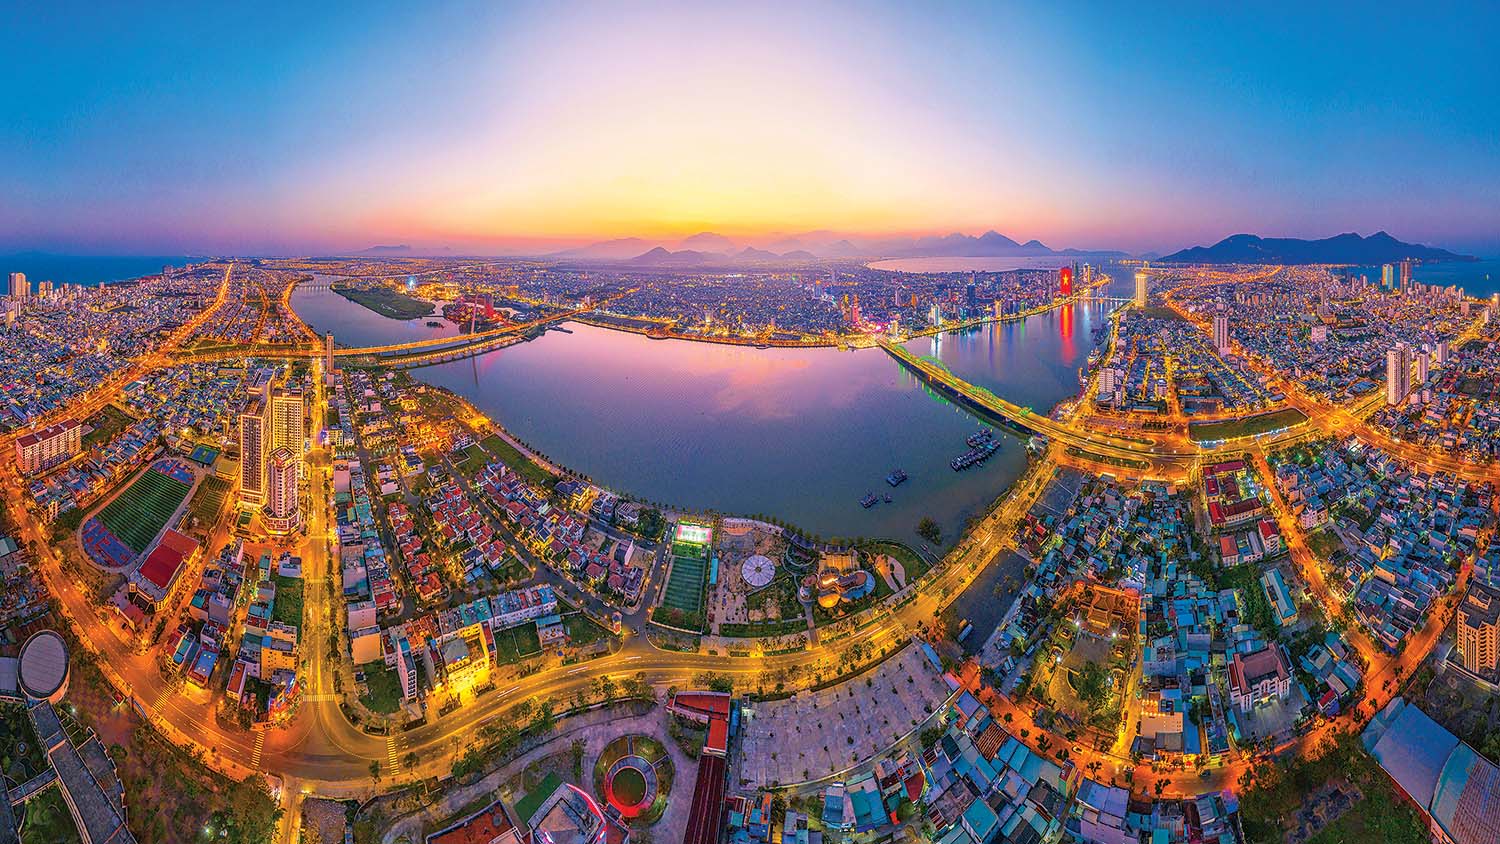 chuyển đổi số góp phần giúp Đà Nẵng trở thành đô thị sinh thái, hiện đại, đáng sống